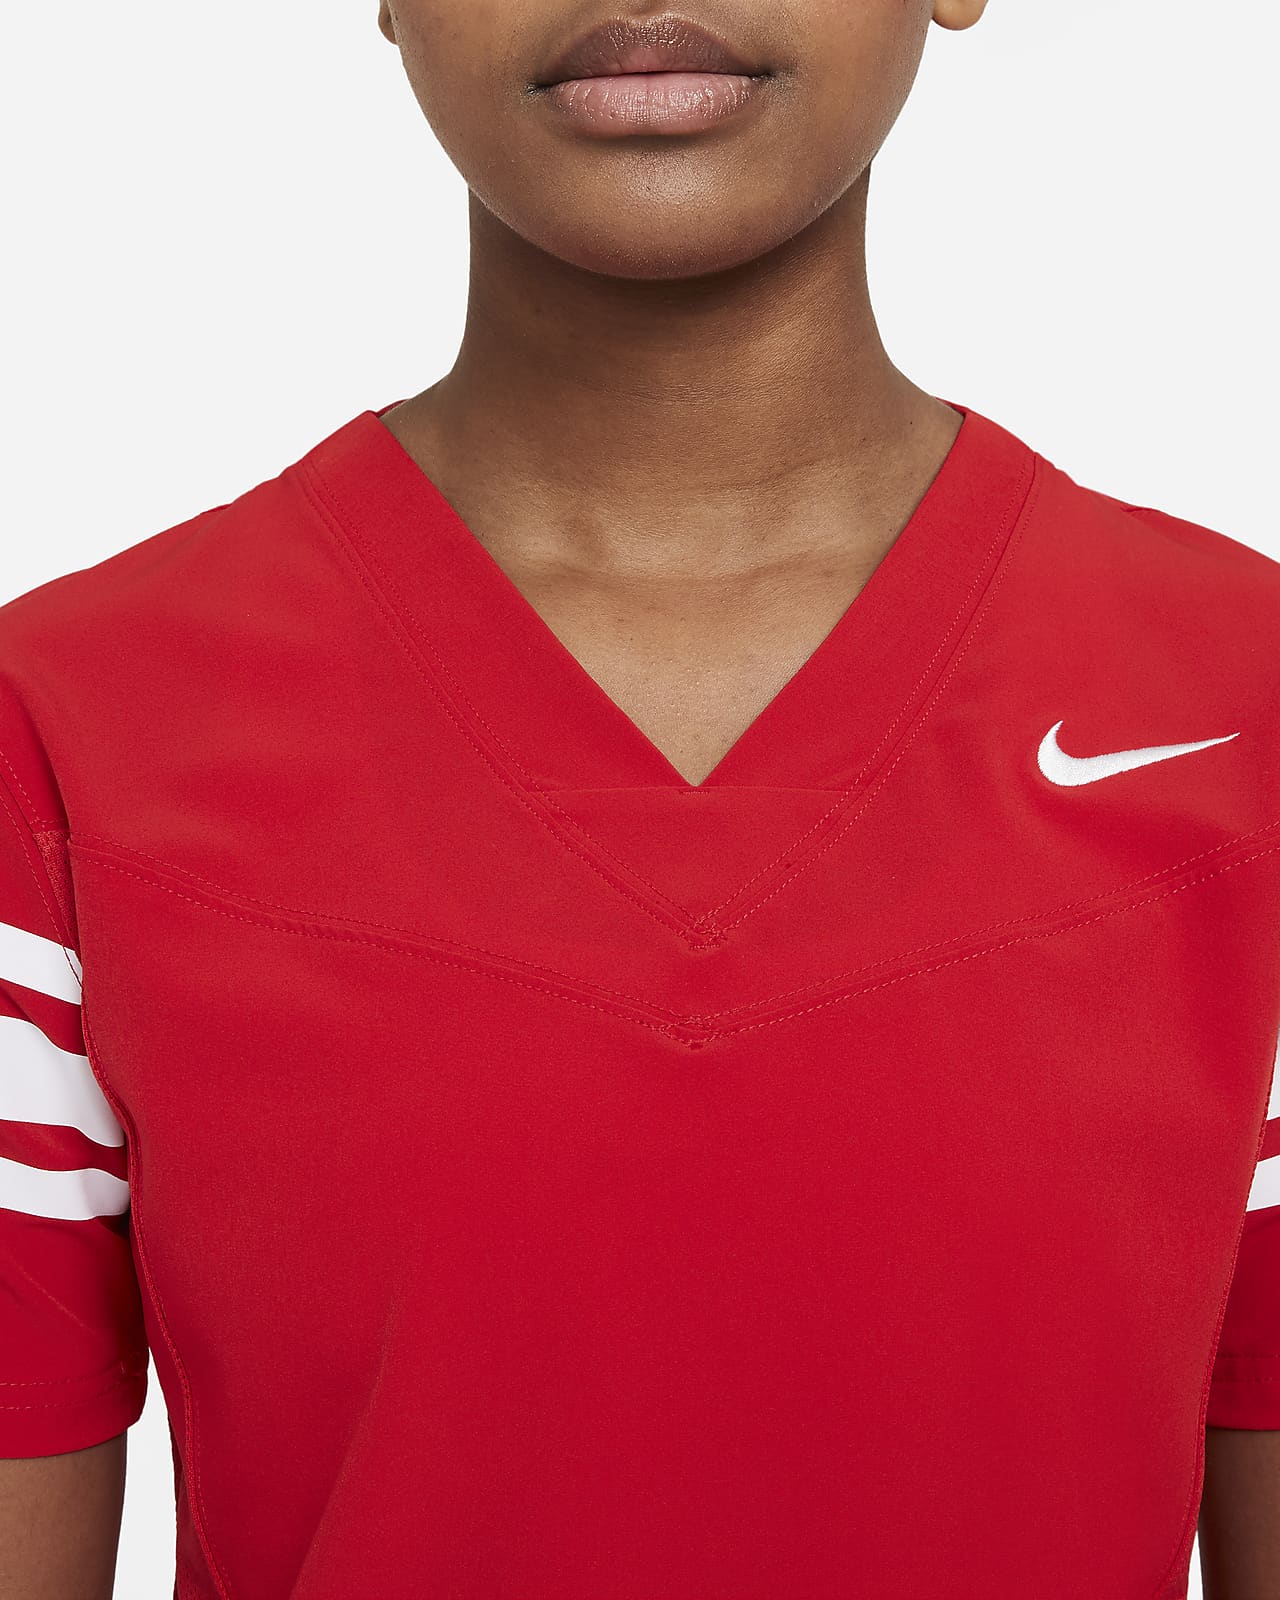 Inesperado En segundo lugar Incorrecto Nike Vapor Women's Flag Football Jersey (Stock). Nike.com